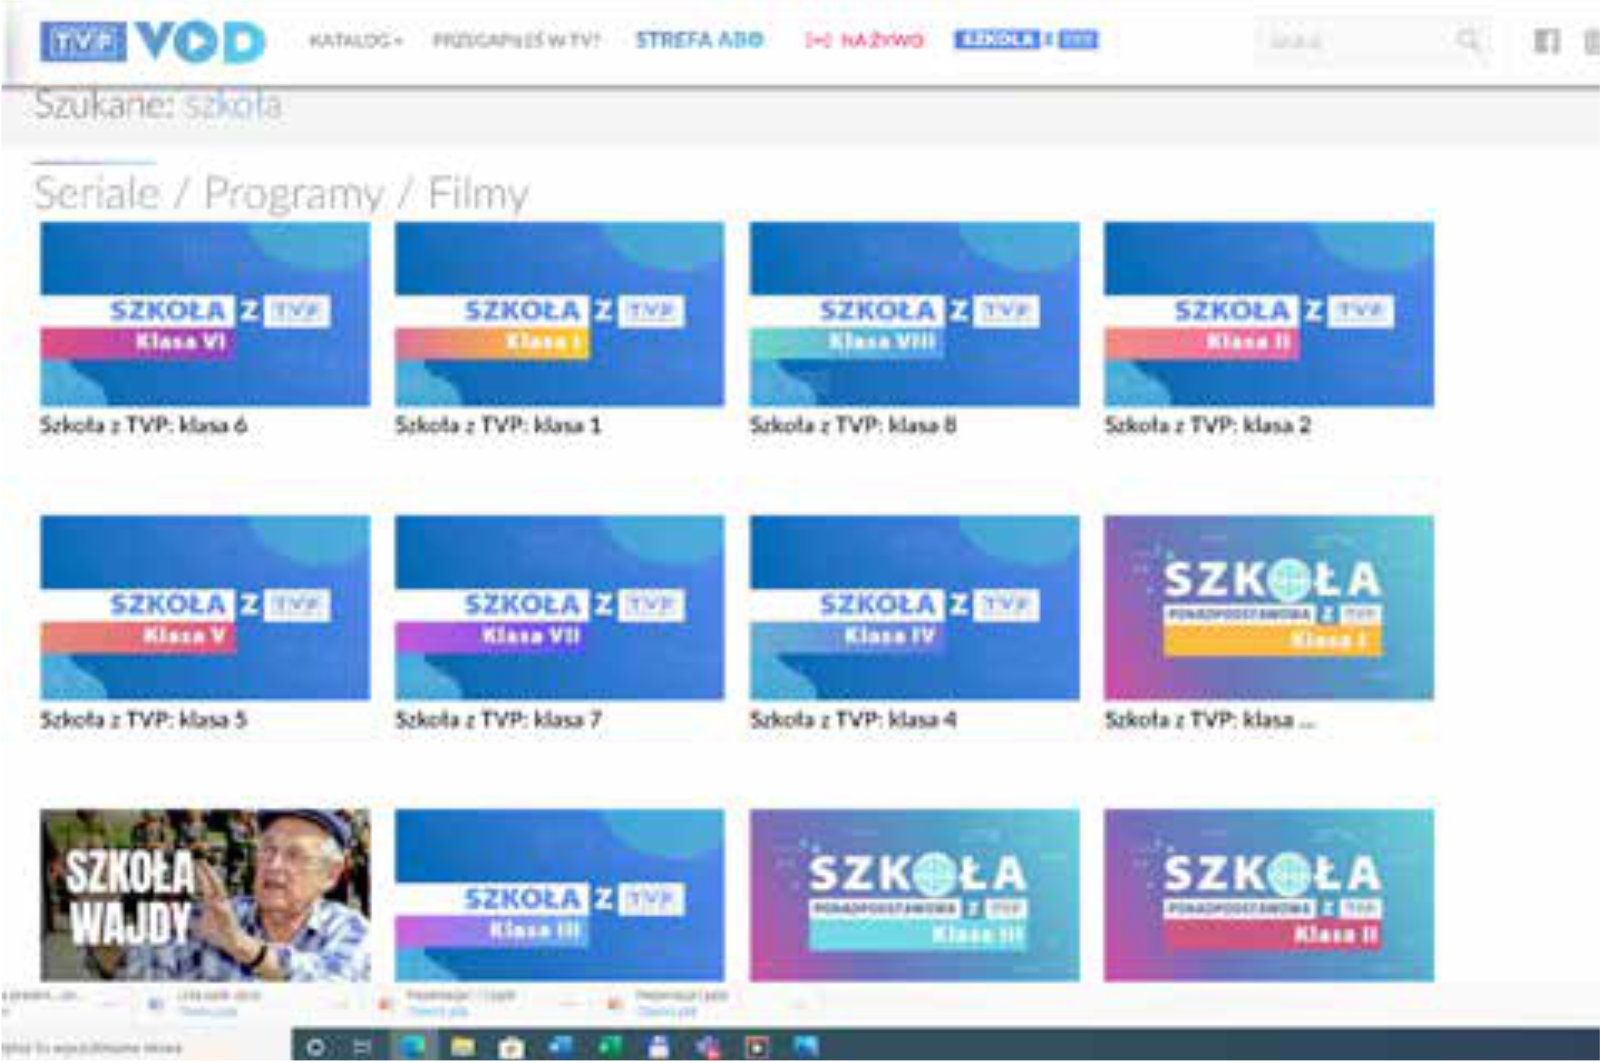 Zrzut ekranu z platformy RVP VOD